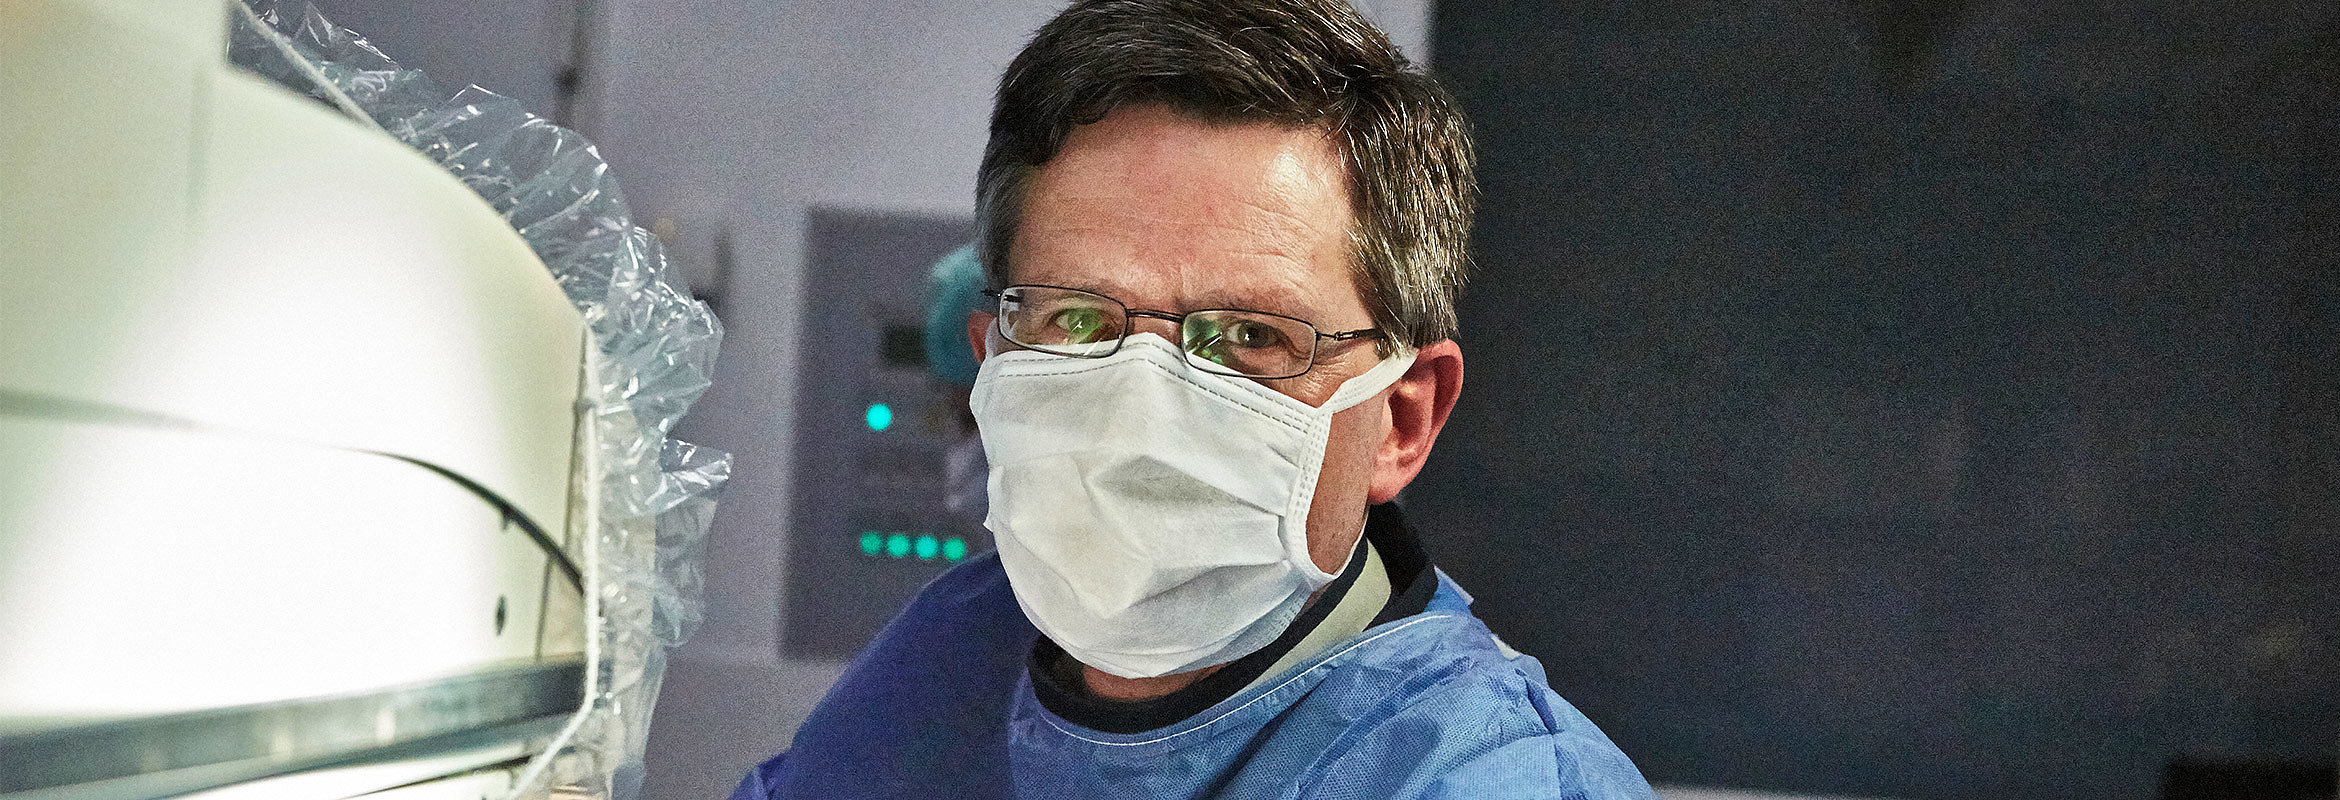 Prof. Dr. med. Jochen Rädle, Chefarzt der Klinik für Innere Medizin 3 in Kaiserslautern, mit Maske